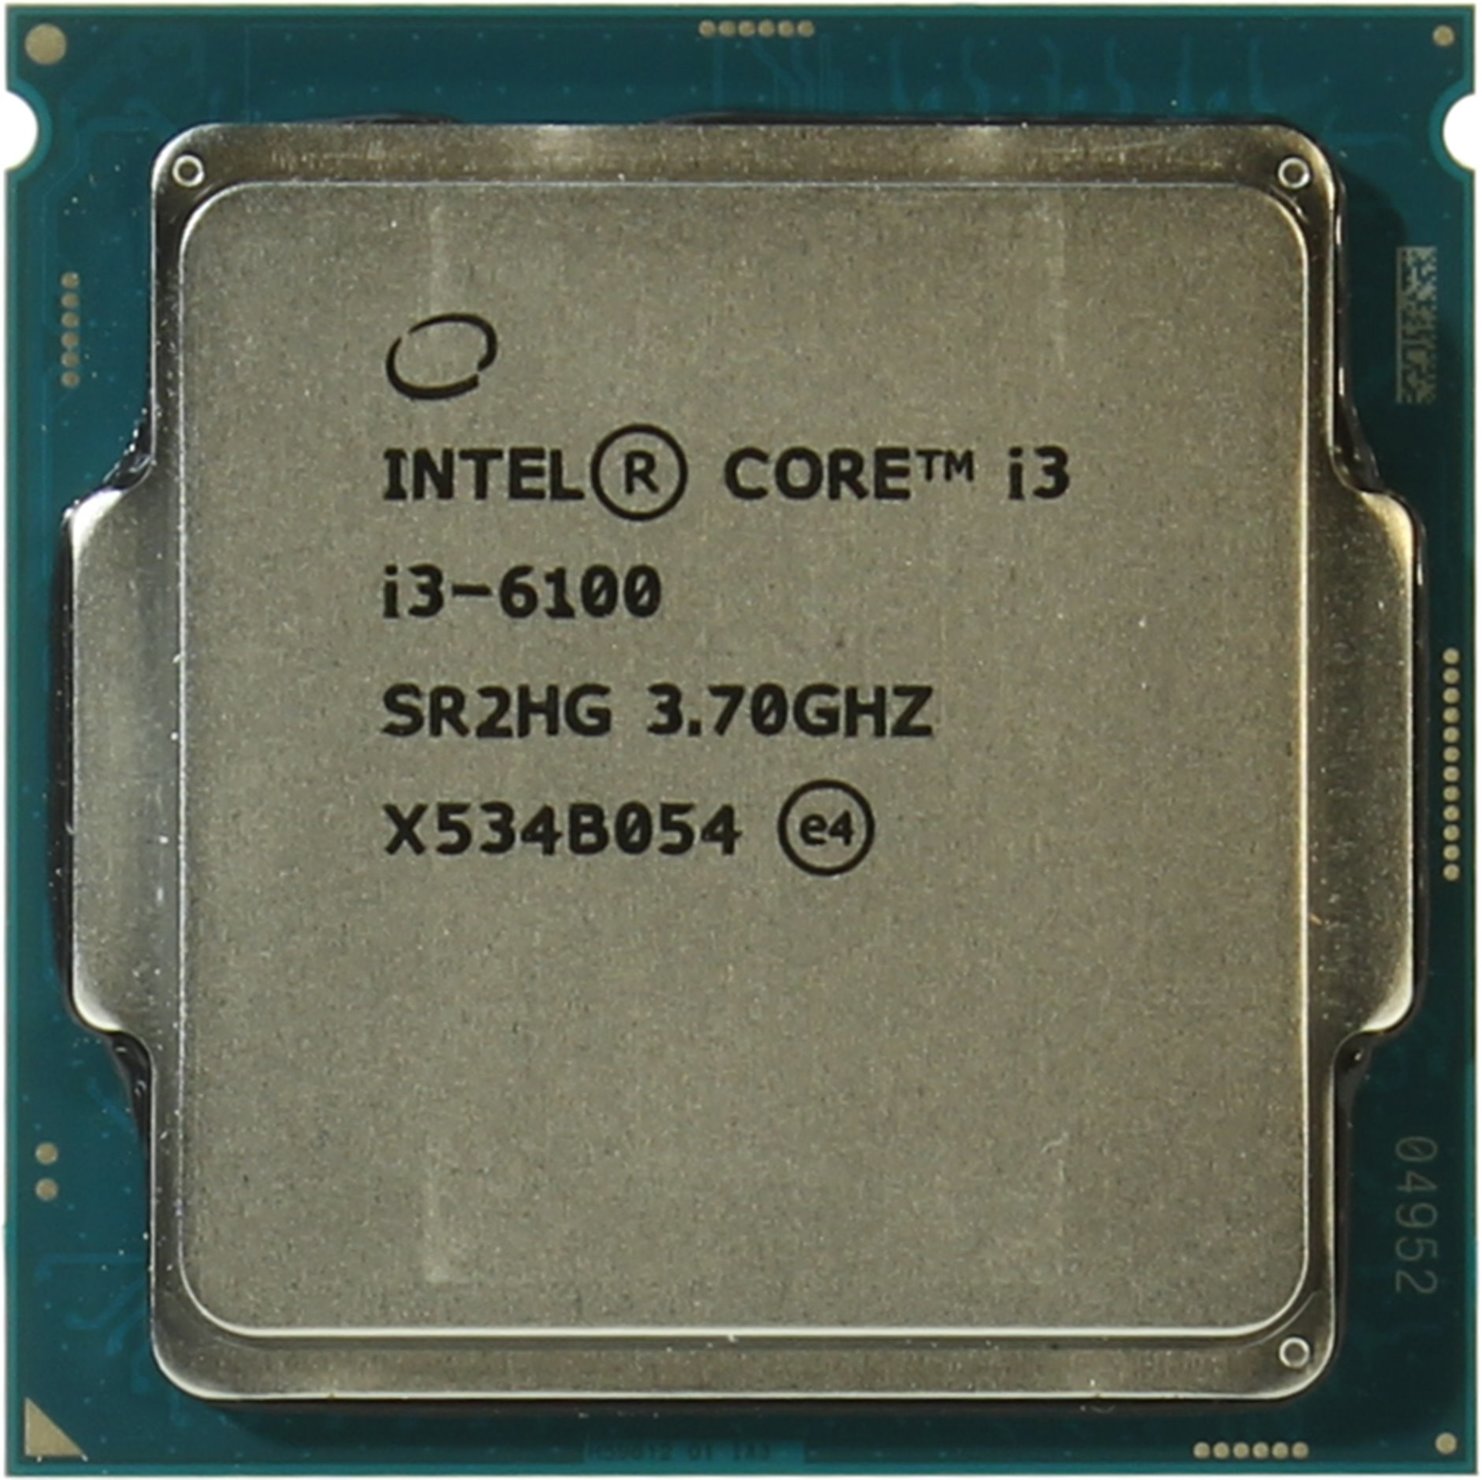 INTEL Core i3-6100 Processor - купить, сравнить цены и характеристики